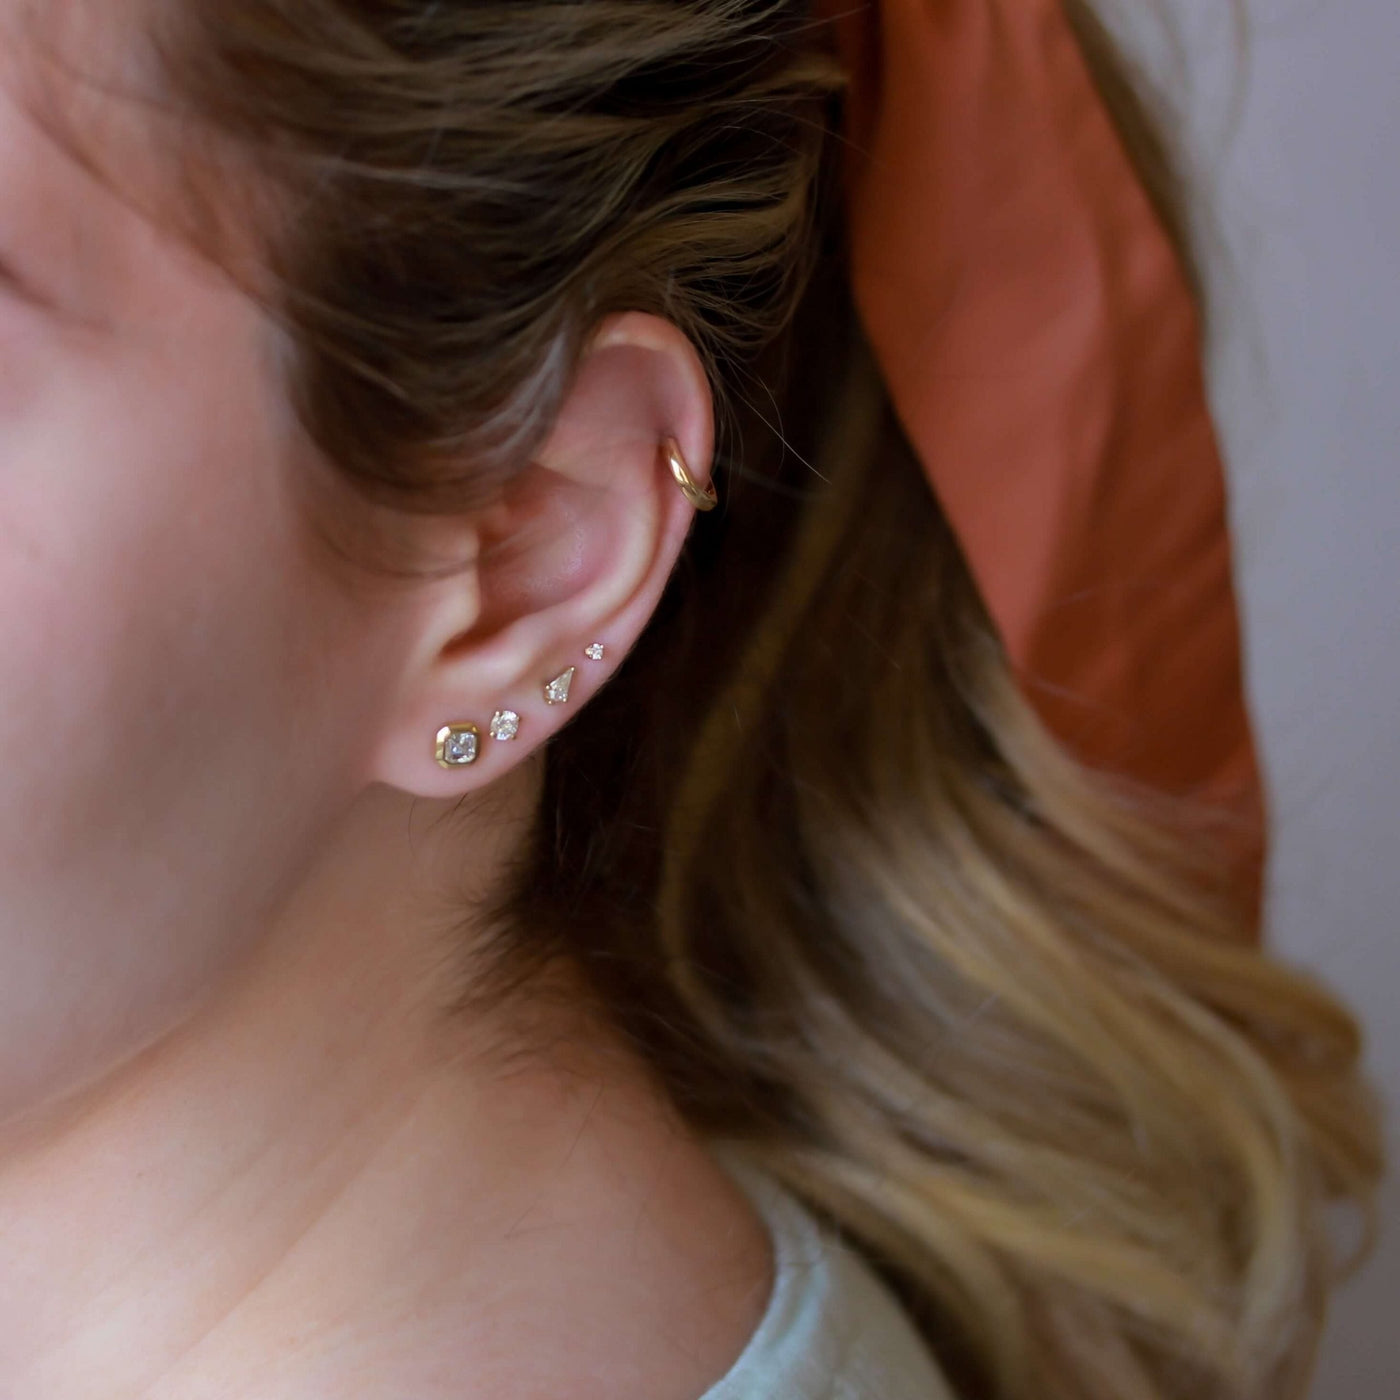 Kelly Piercing Hoop Earring 14K Gold Earrings 